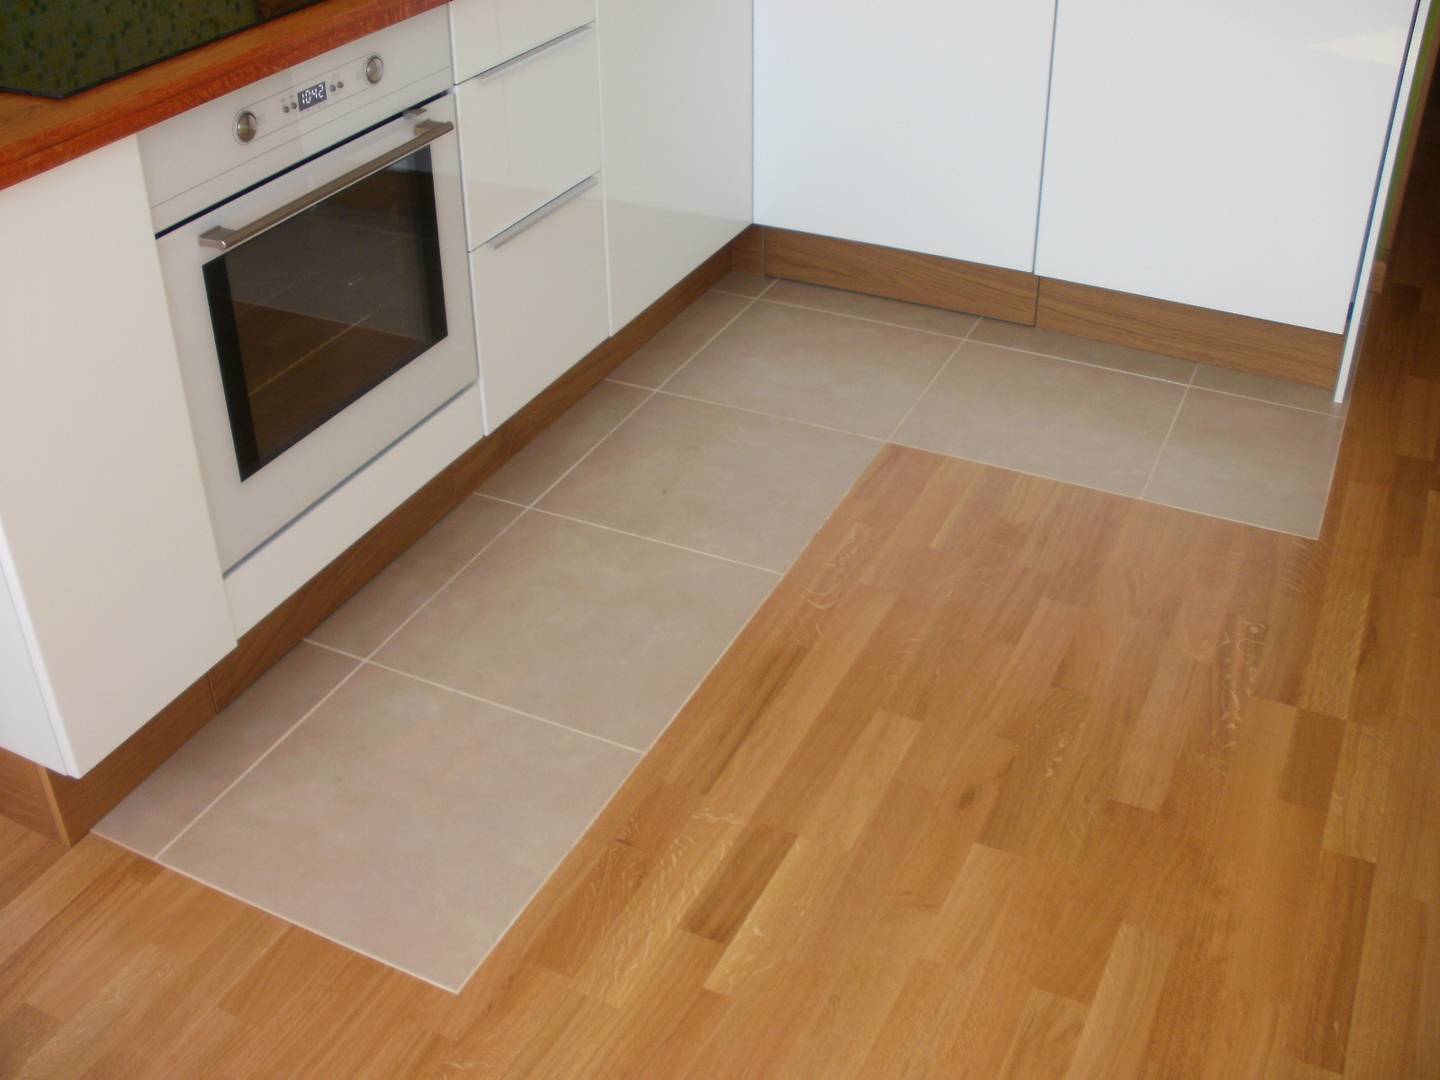 Комбинированный пол на кухне из плитки и ламината: фото и идеи оформления